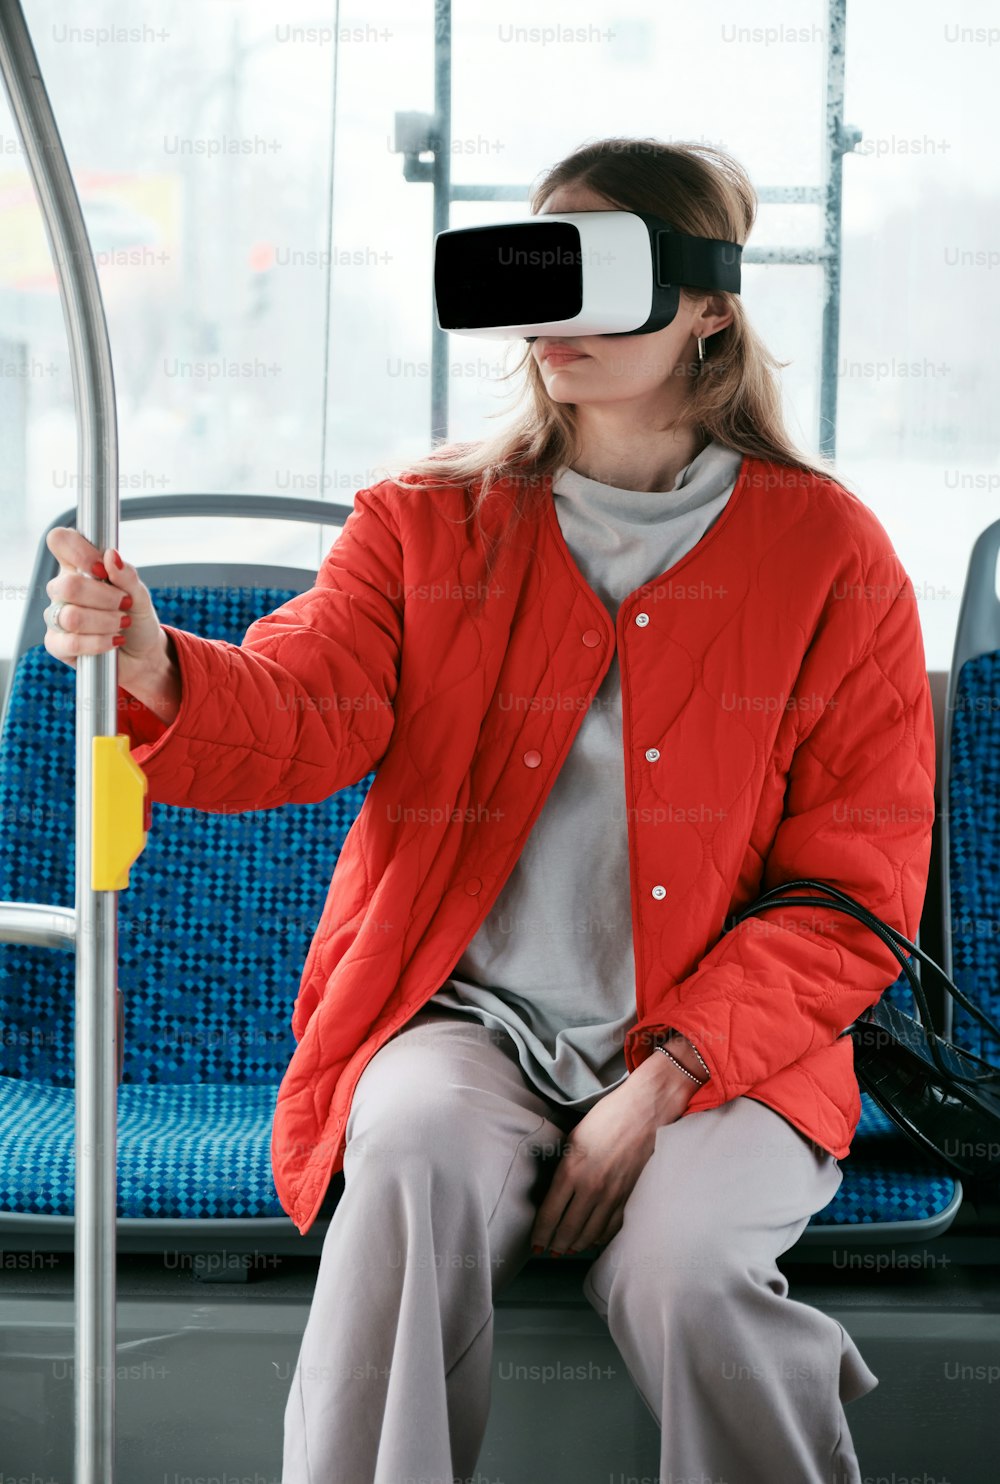 Une femme assise dans un bus portant une paire de lunettes virtuelles